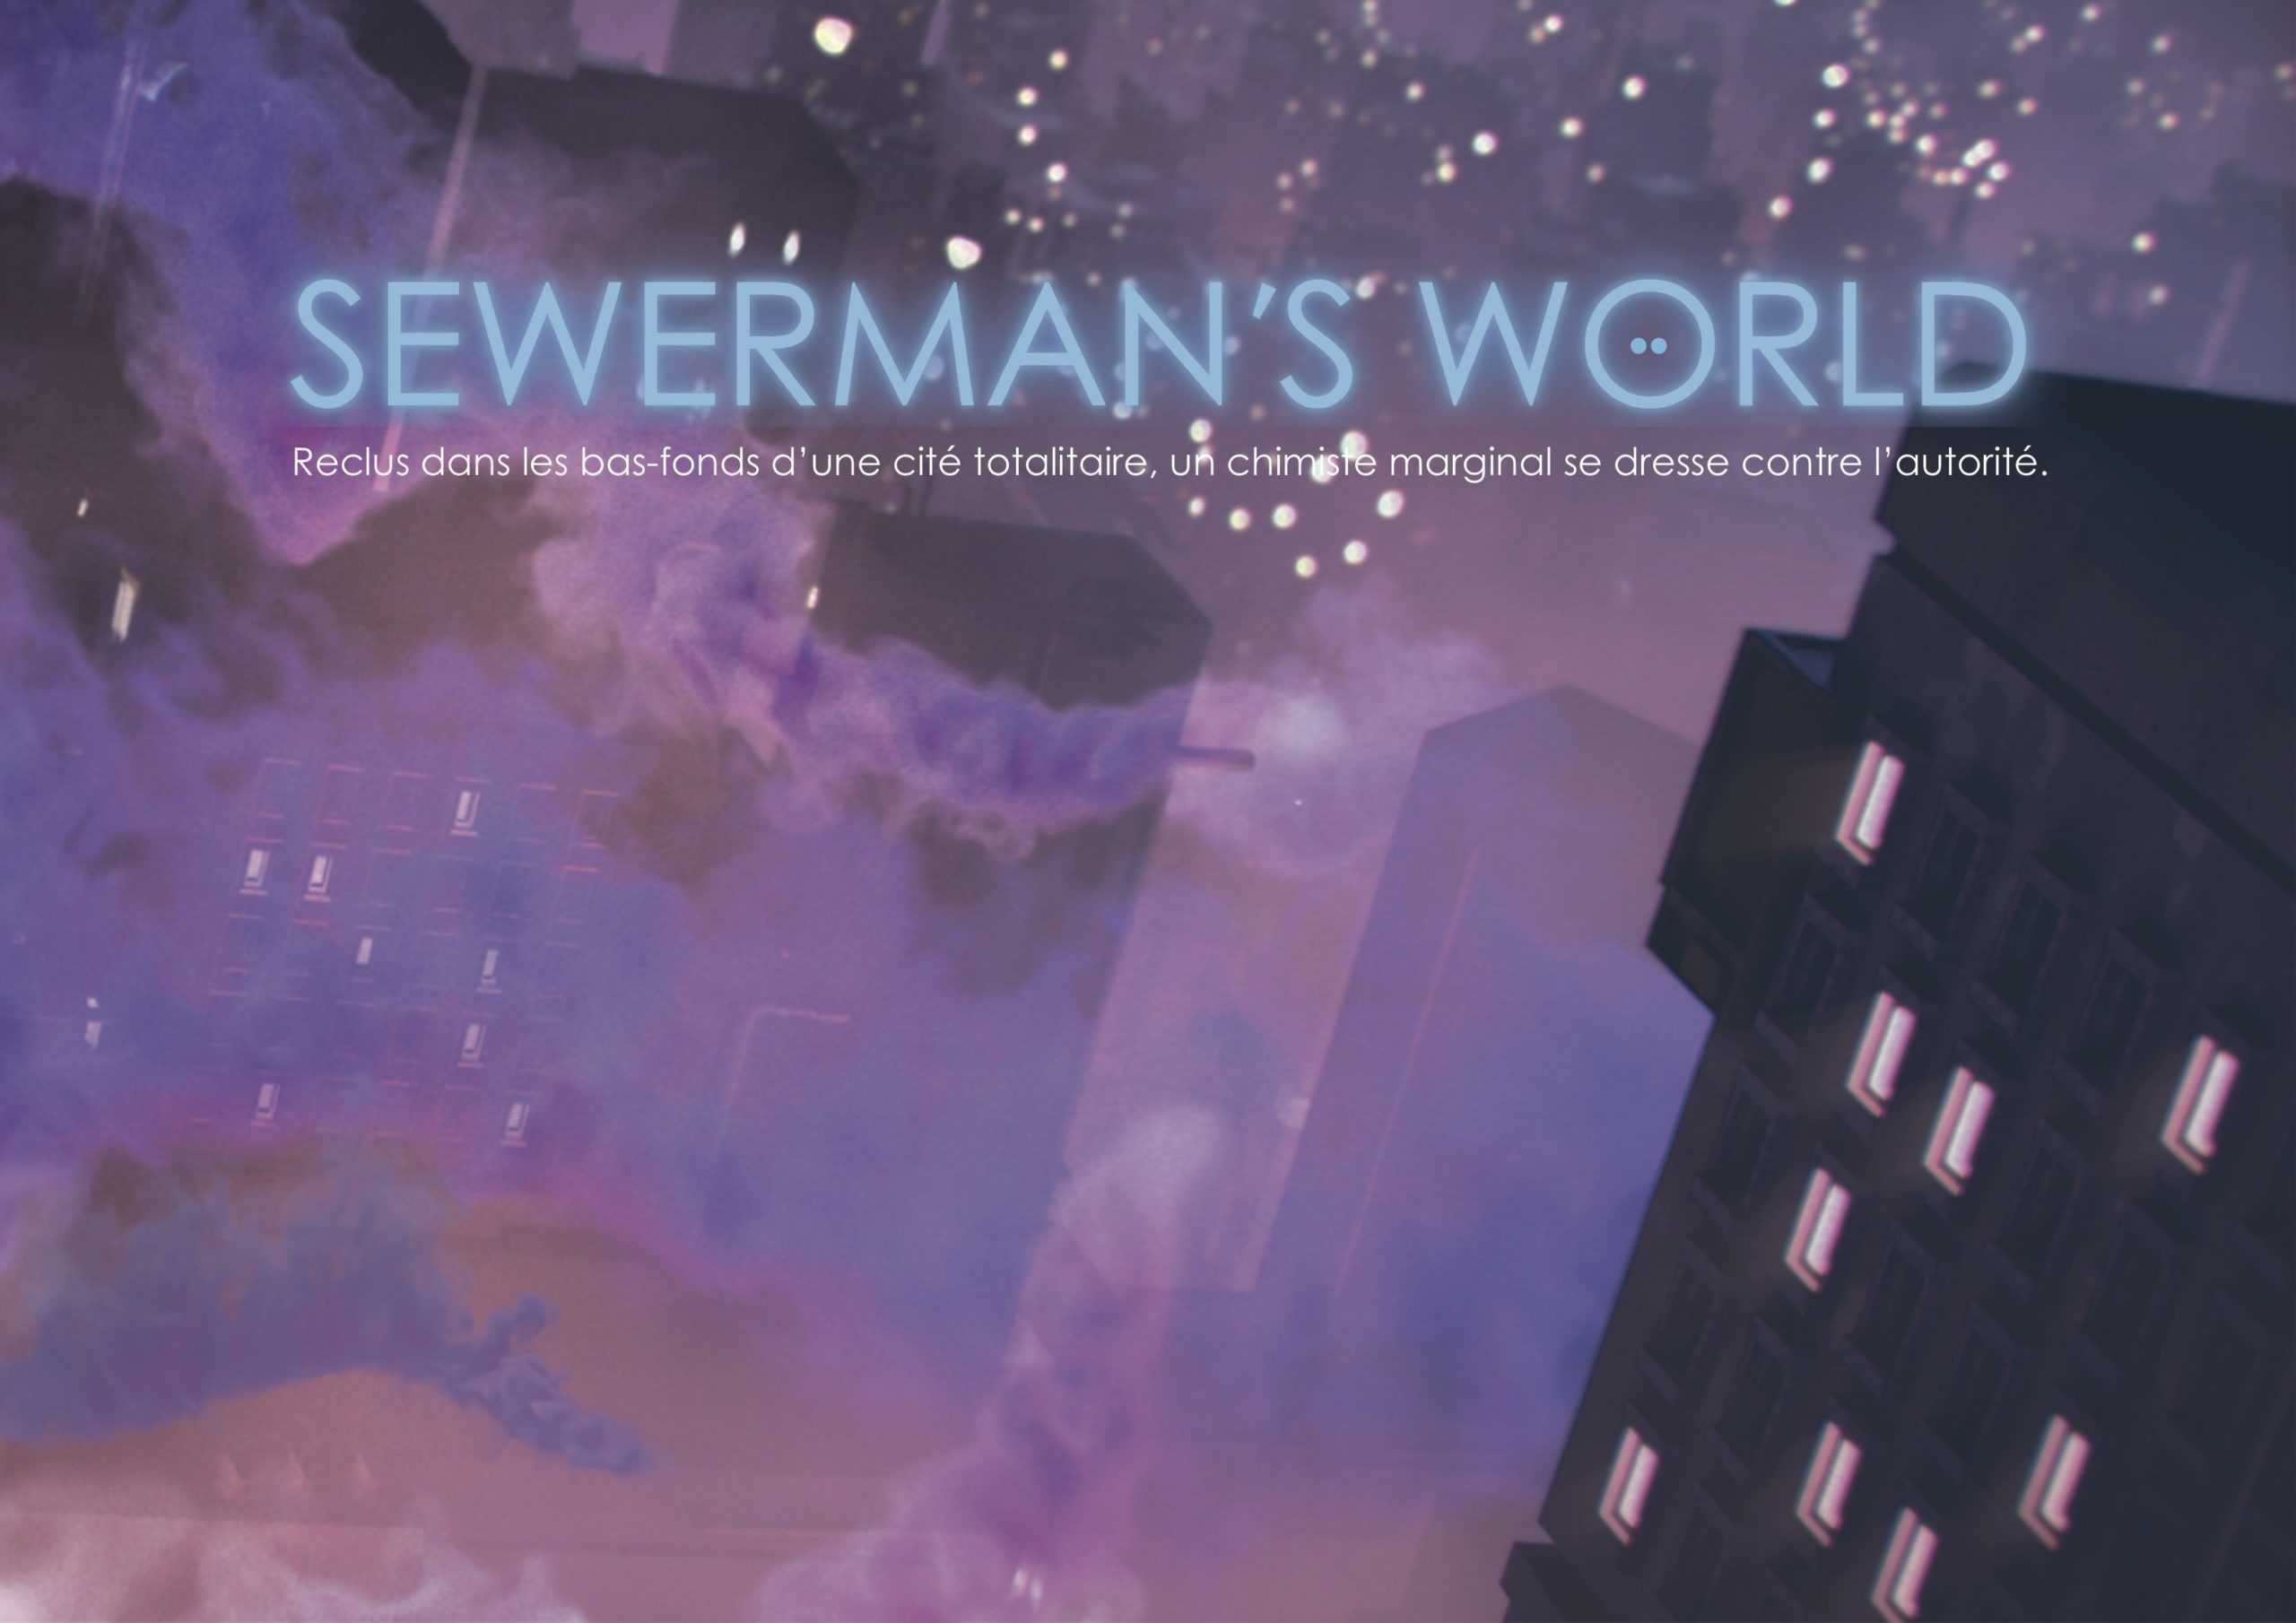 sewermans-wordl-bis-scaled.jpg